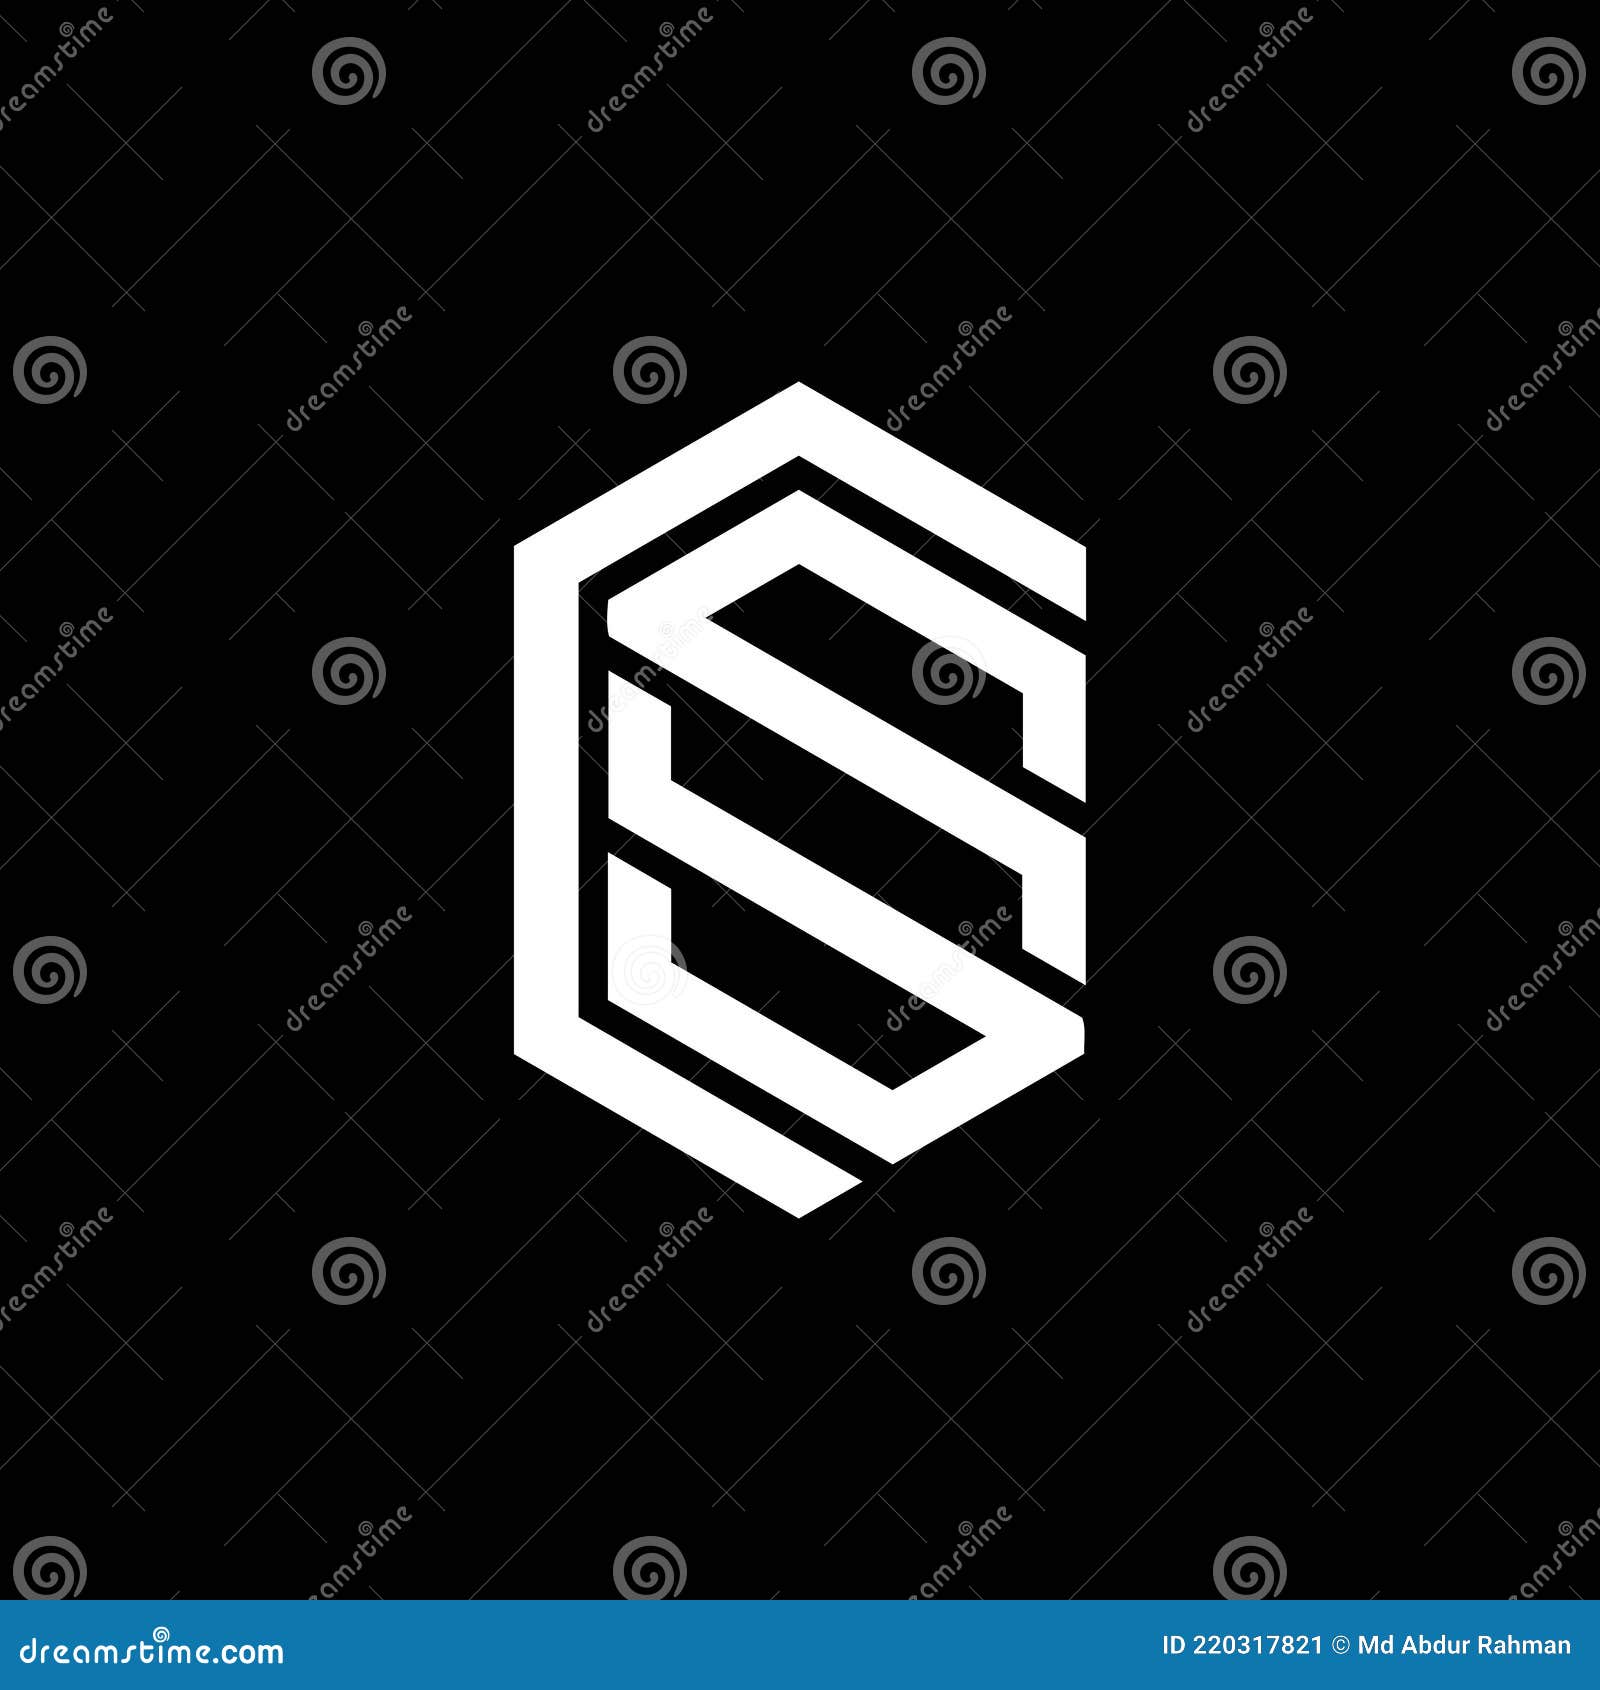 Thiết kế logo CSS trên nền đen là một cách để tạo ra sự tinh tế và sang trọng cho bất kỳ thương hiệu nào. Hãy xem hình ảnh liên quan để tìm hiểu về những ý tưởng thiết kế mới mẻ và độc đáo trên nền tối này.